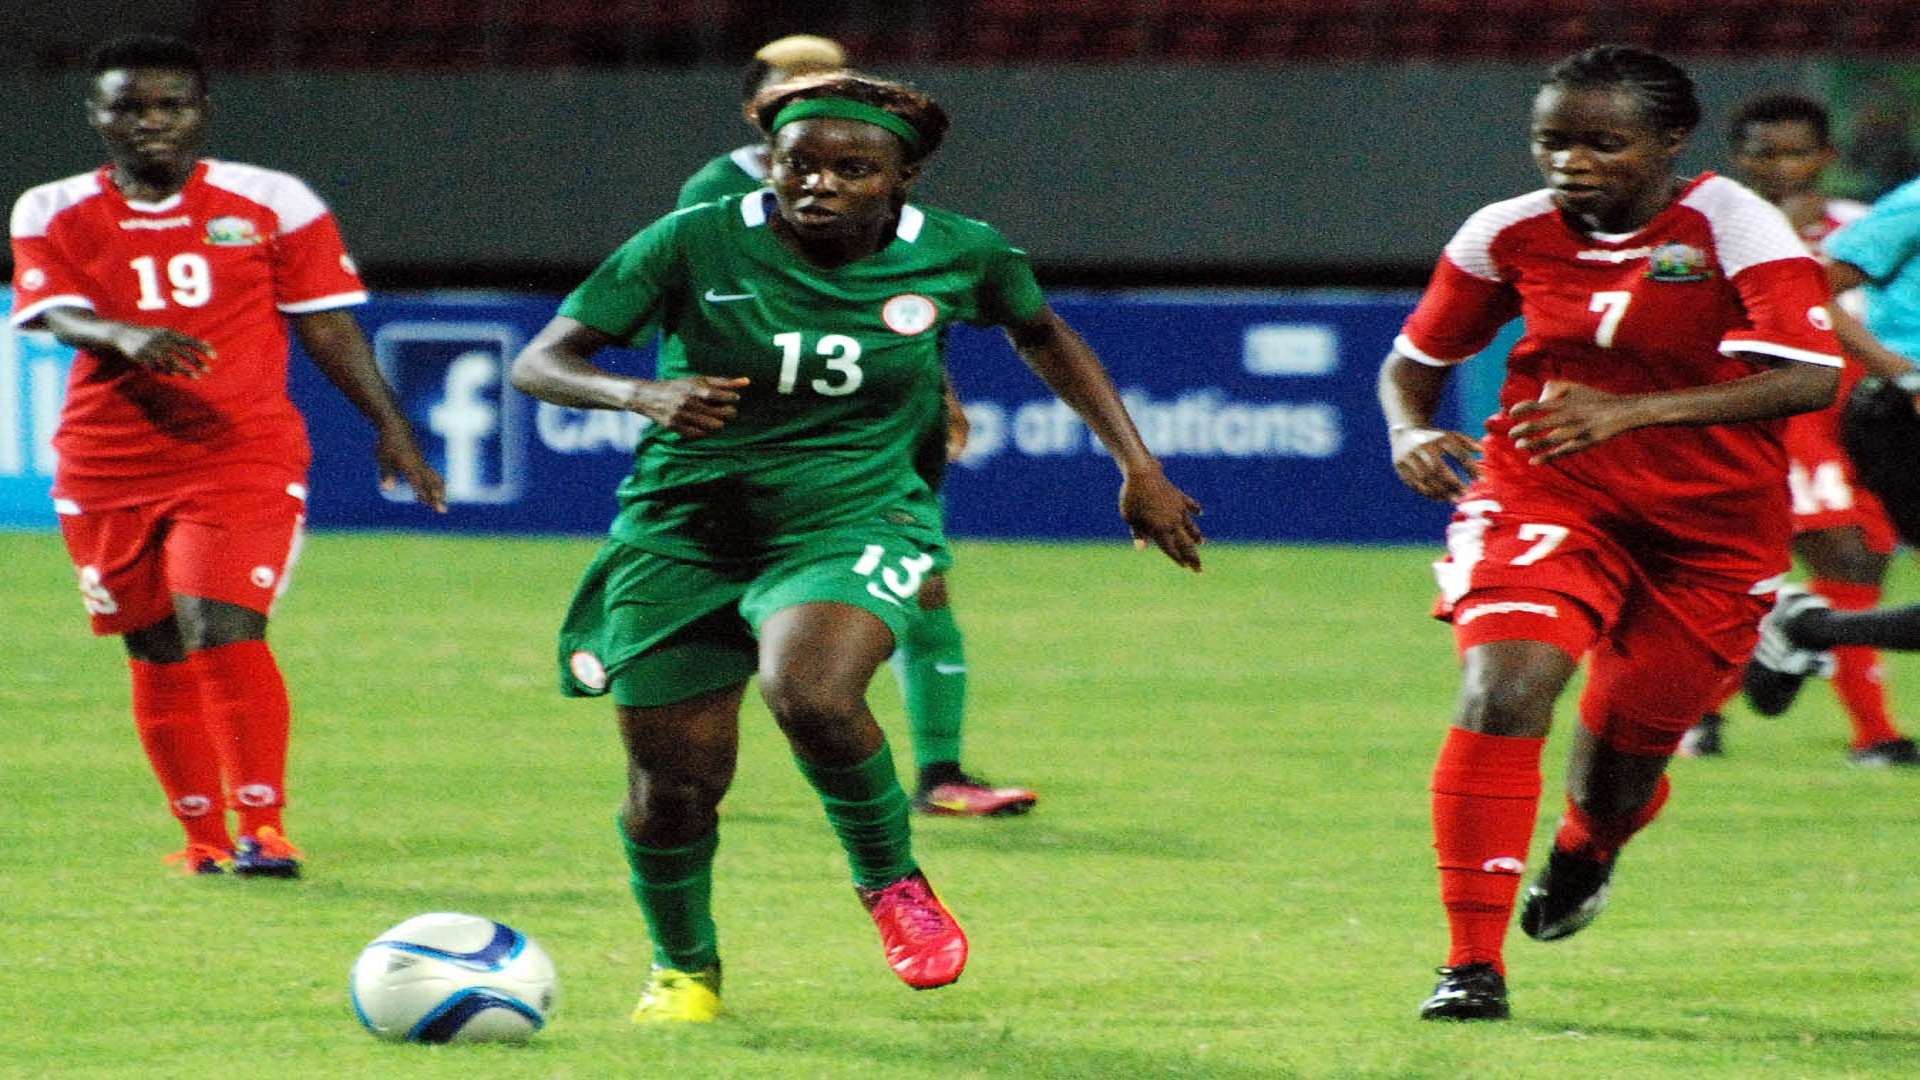 Ngozi Okobi against Kenya in Limbe